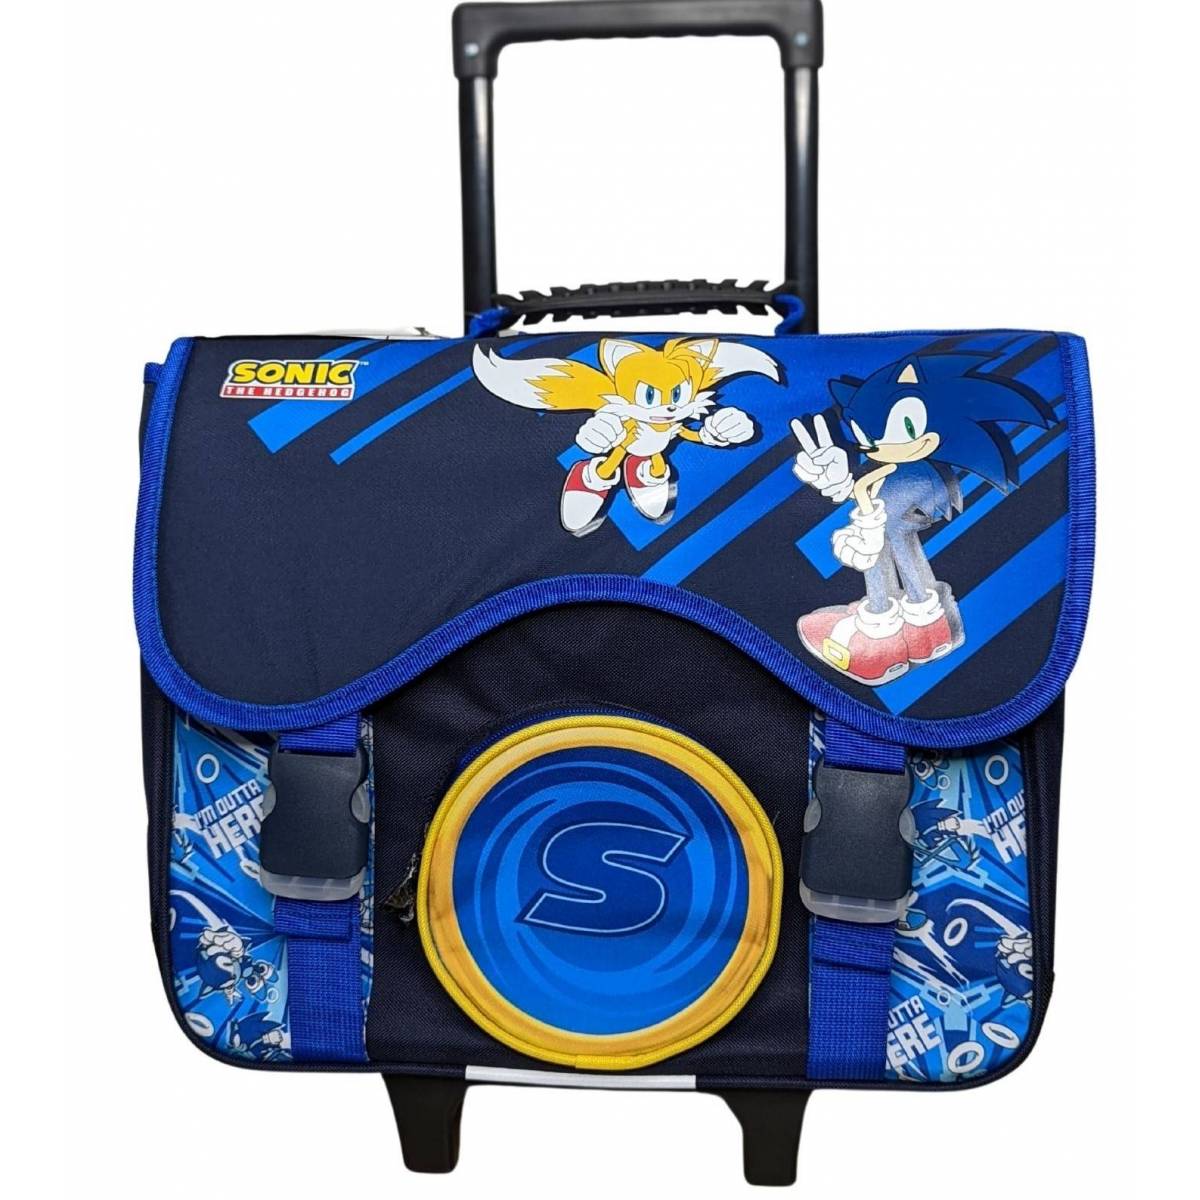 Cartable à roulettes Sonic The Hedgehog